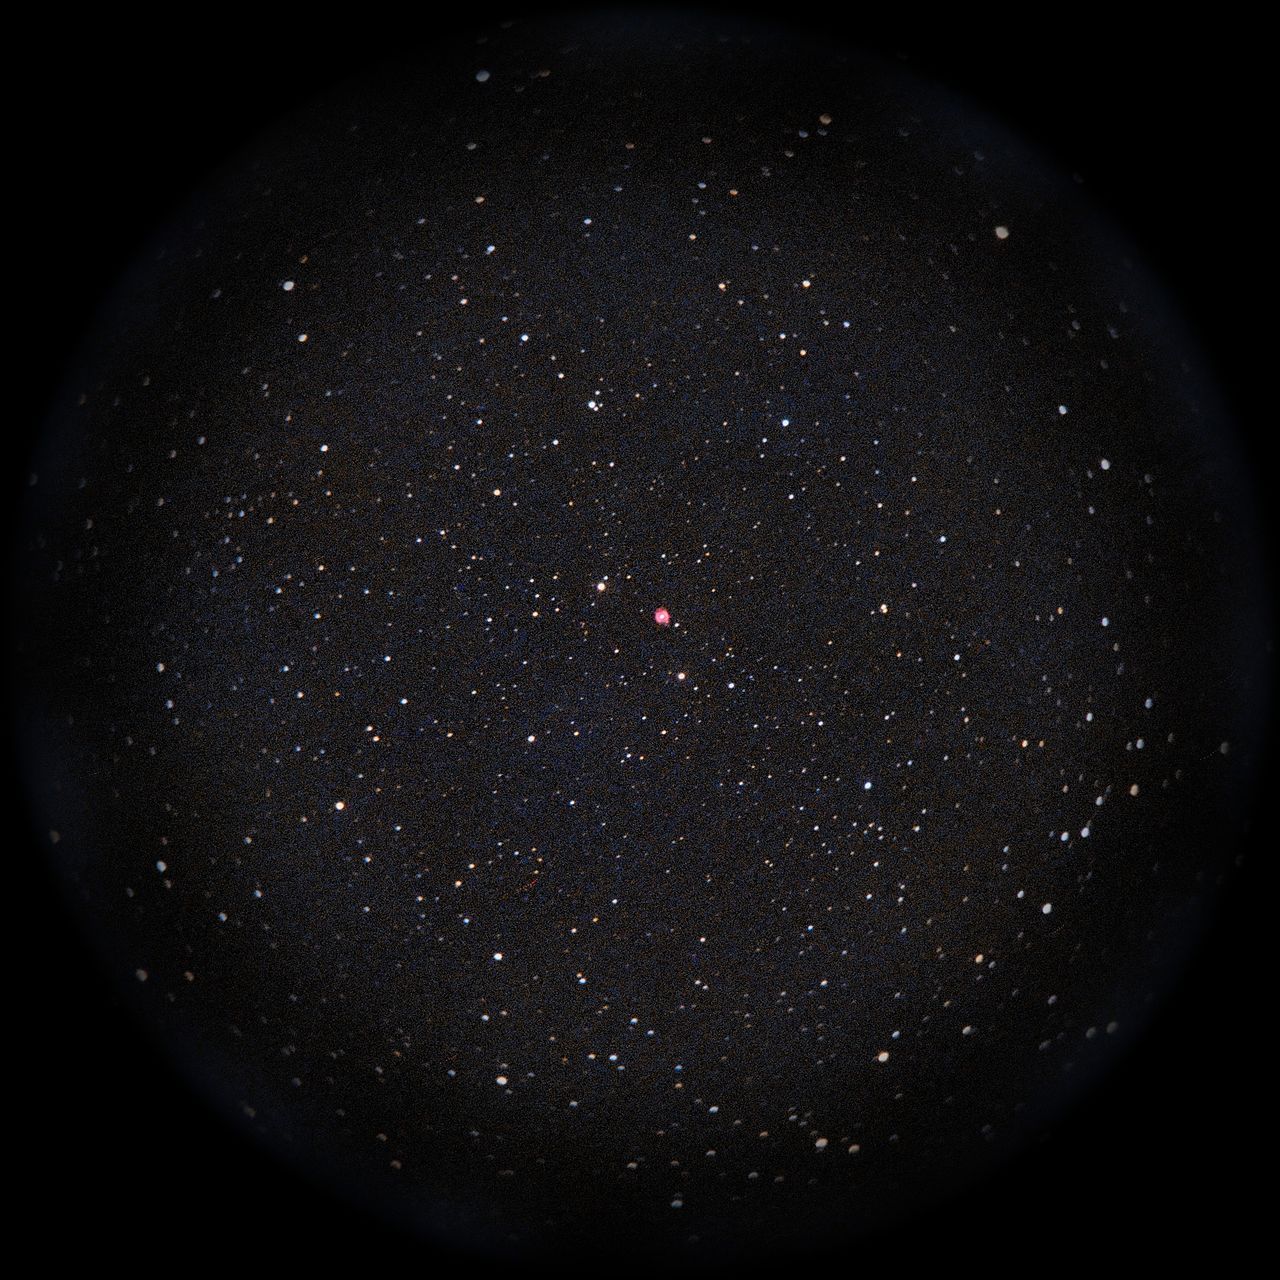 Image of NGC